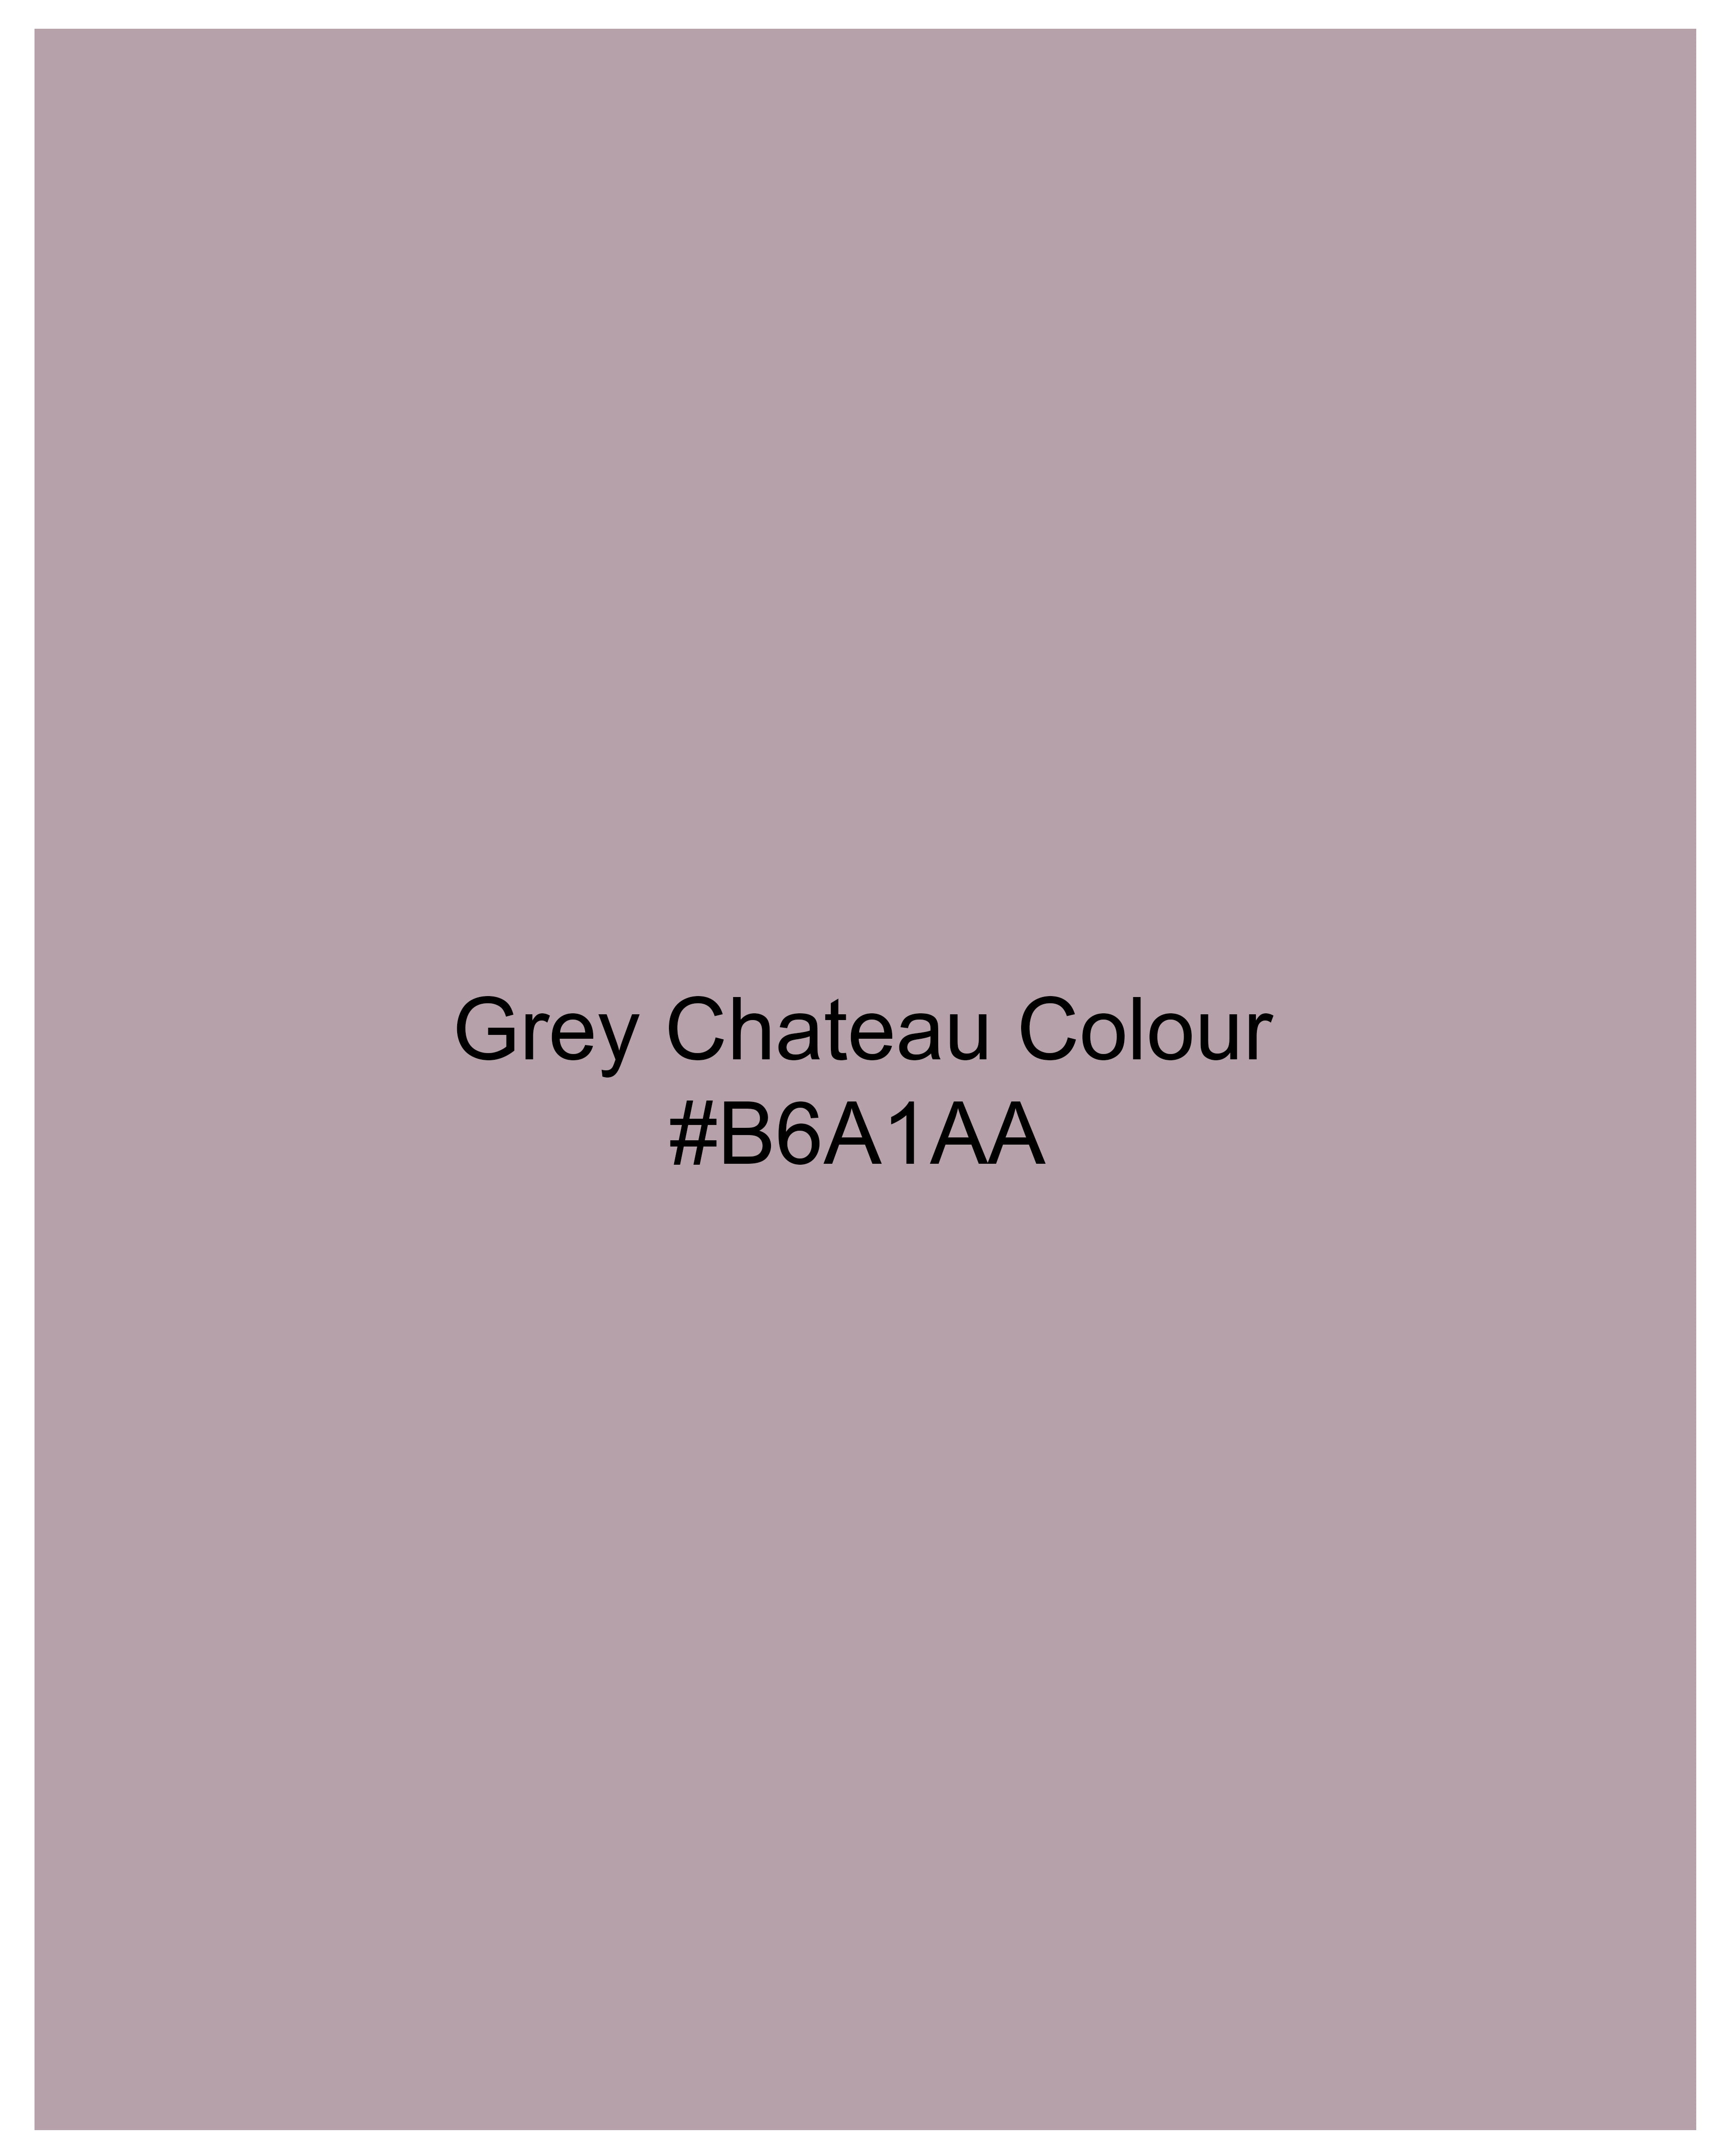 Gray Chateau Violet Mercerised Pique Polo TS879-S, TS879-M, TS879-L, TS879-XL, TS879-XXL